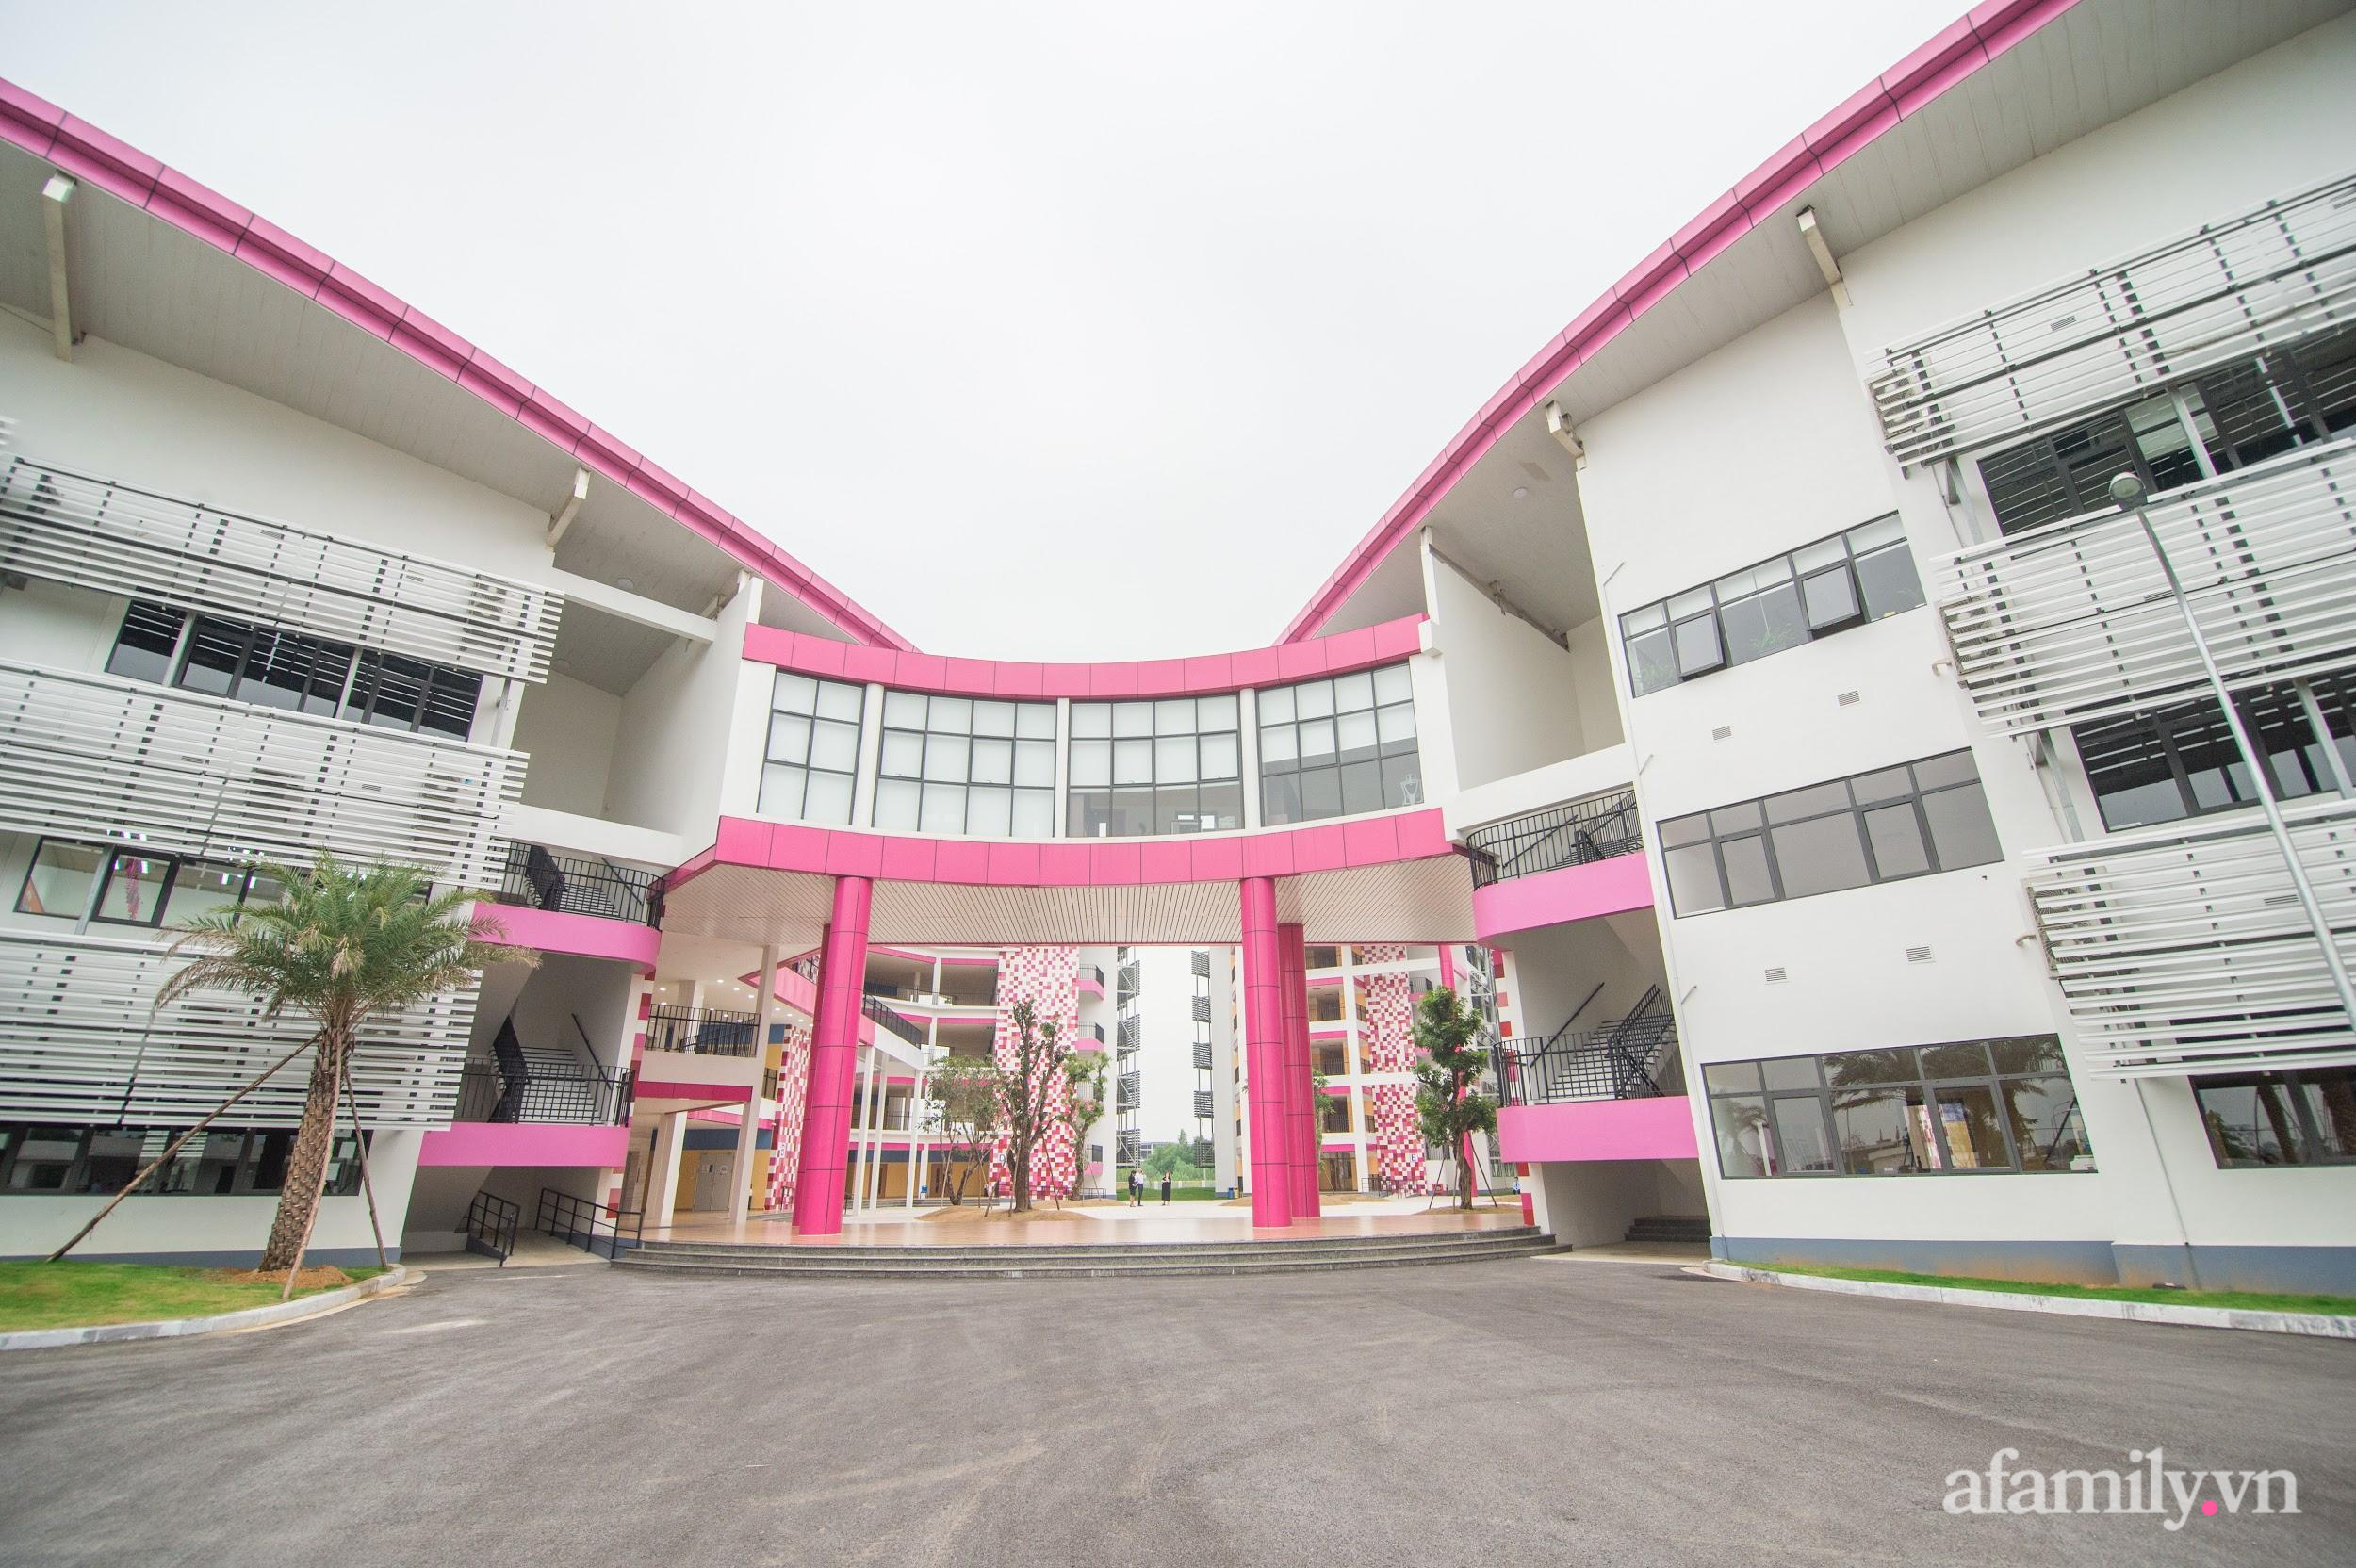 5 trường nội trú đẹp lung linh ở Hà Nội khiến nhiều phụ huynh mê mẩn